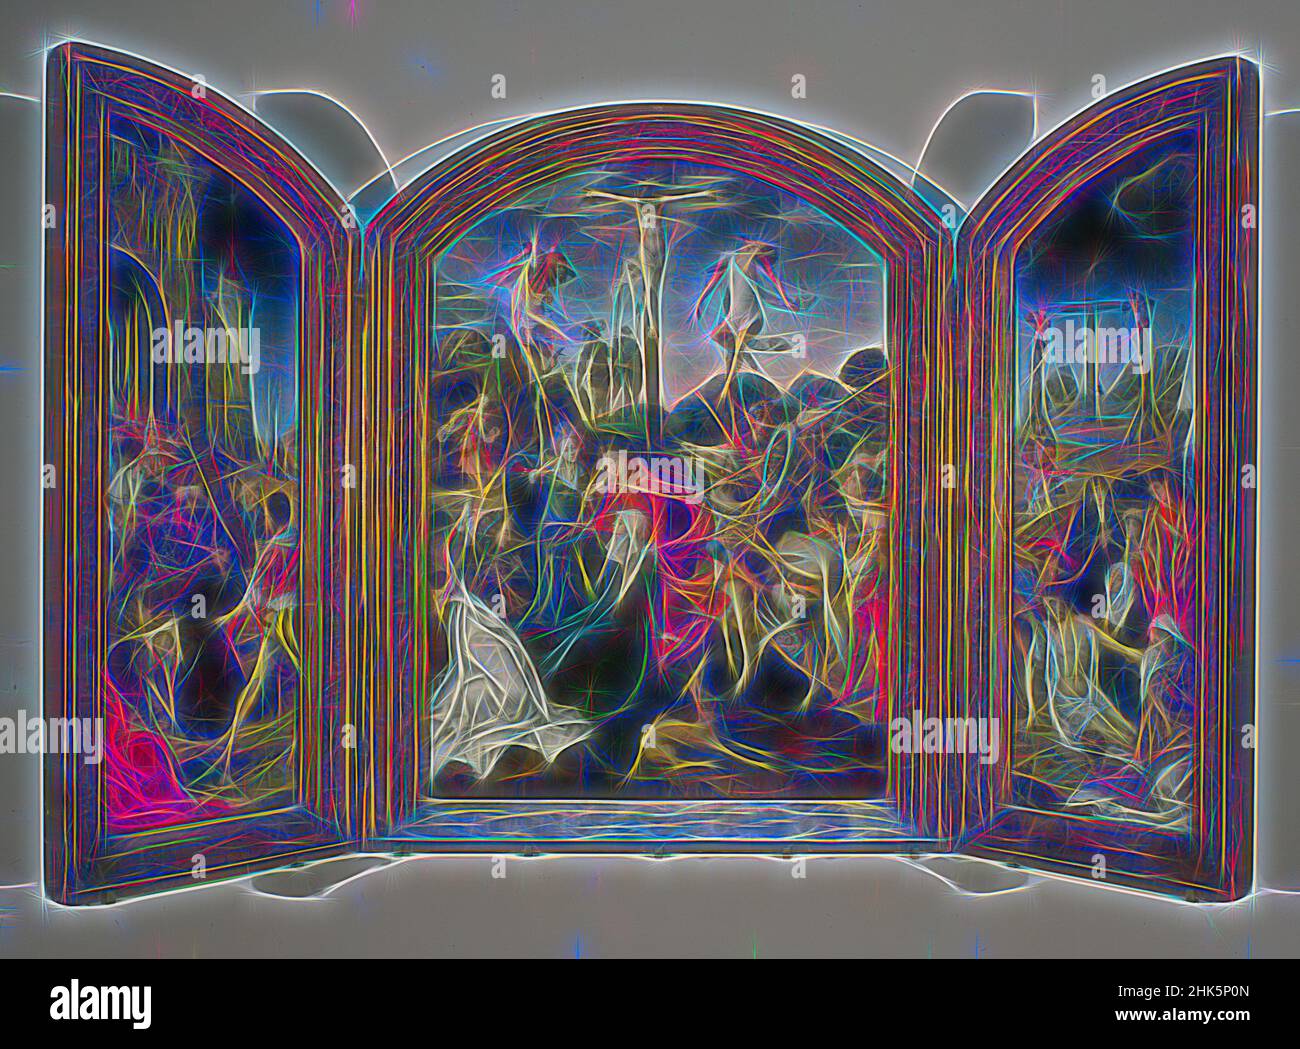 Inspiriert von Triptychon der Passion, Schule von Antwerpen, Flämisch, ca. 1515–20, Öl auf Tafel, Hergestellt in Antwerpen, Belgien, Europa, Gemälde, Mittelkonsole: 45 1/4 x 32 1/4 Zoll (114,9 x 81,9 cm, neu erfunden von Artotop. Klassische Kunst neu erfunden mit einem modernen Twist. Design von warmen fröhlichen Leuchten der Helligkeit und Lichtstrahl Strahlkraft. Fotografie inspiriert von Surrealismus und Futurismus, umarmt dynamische Energie der modernen Technologie, Bewegung, Geschwindigkeit und Kultur zu revolutionieren Stockfoto